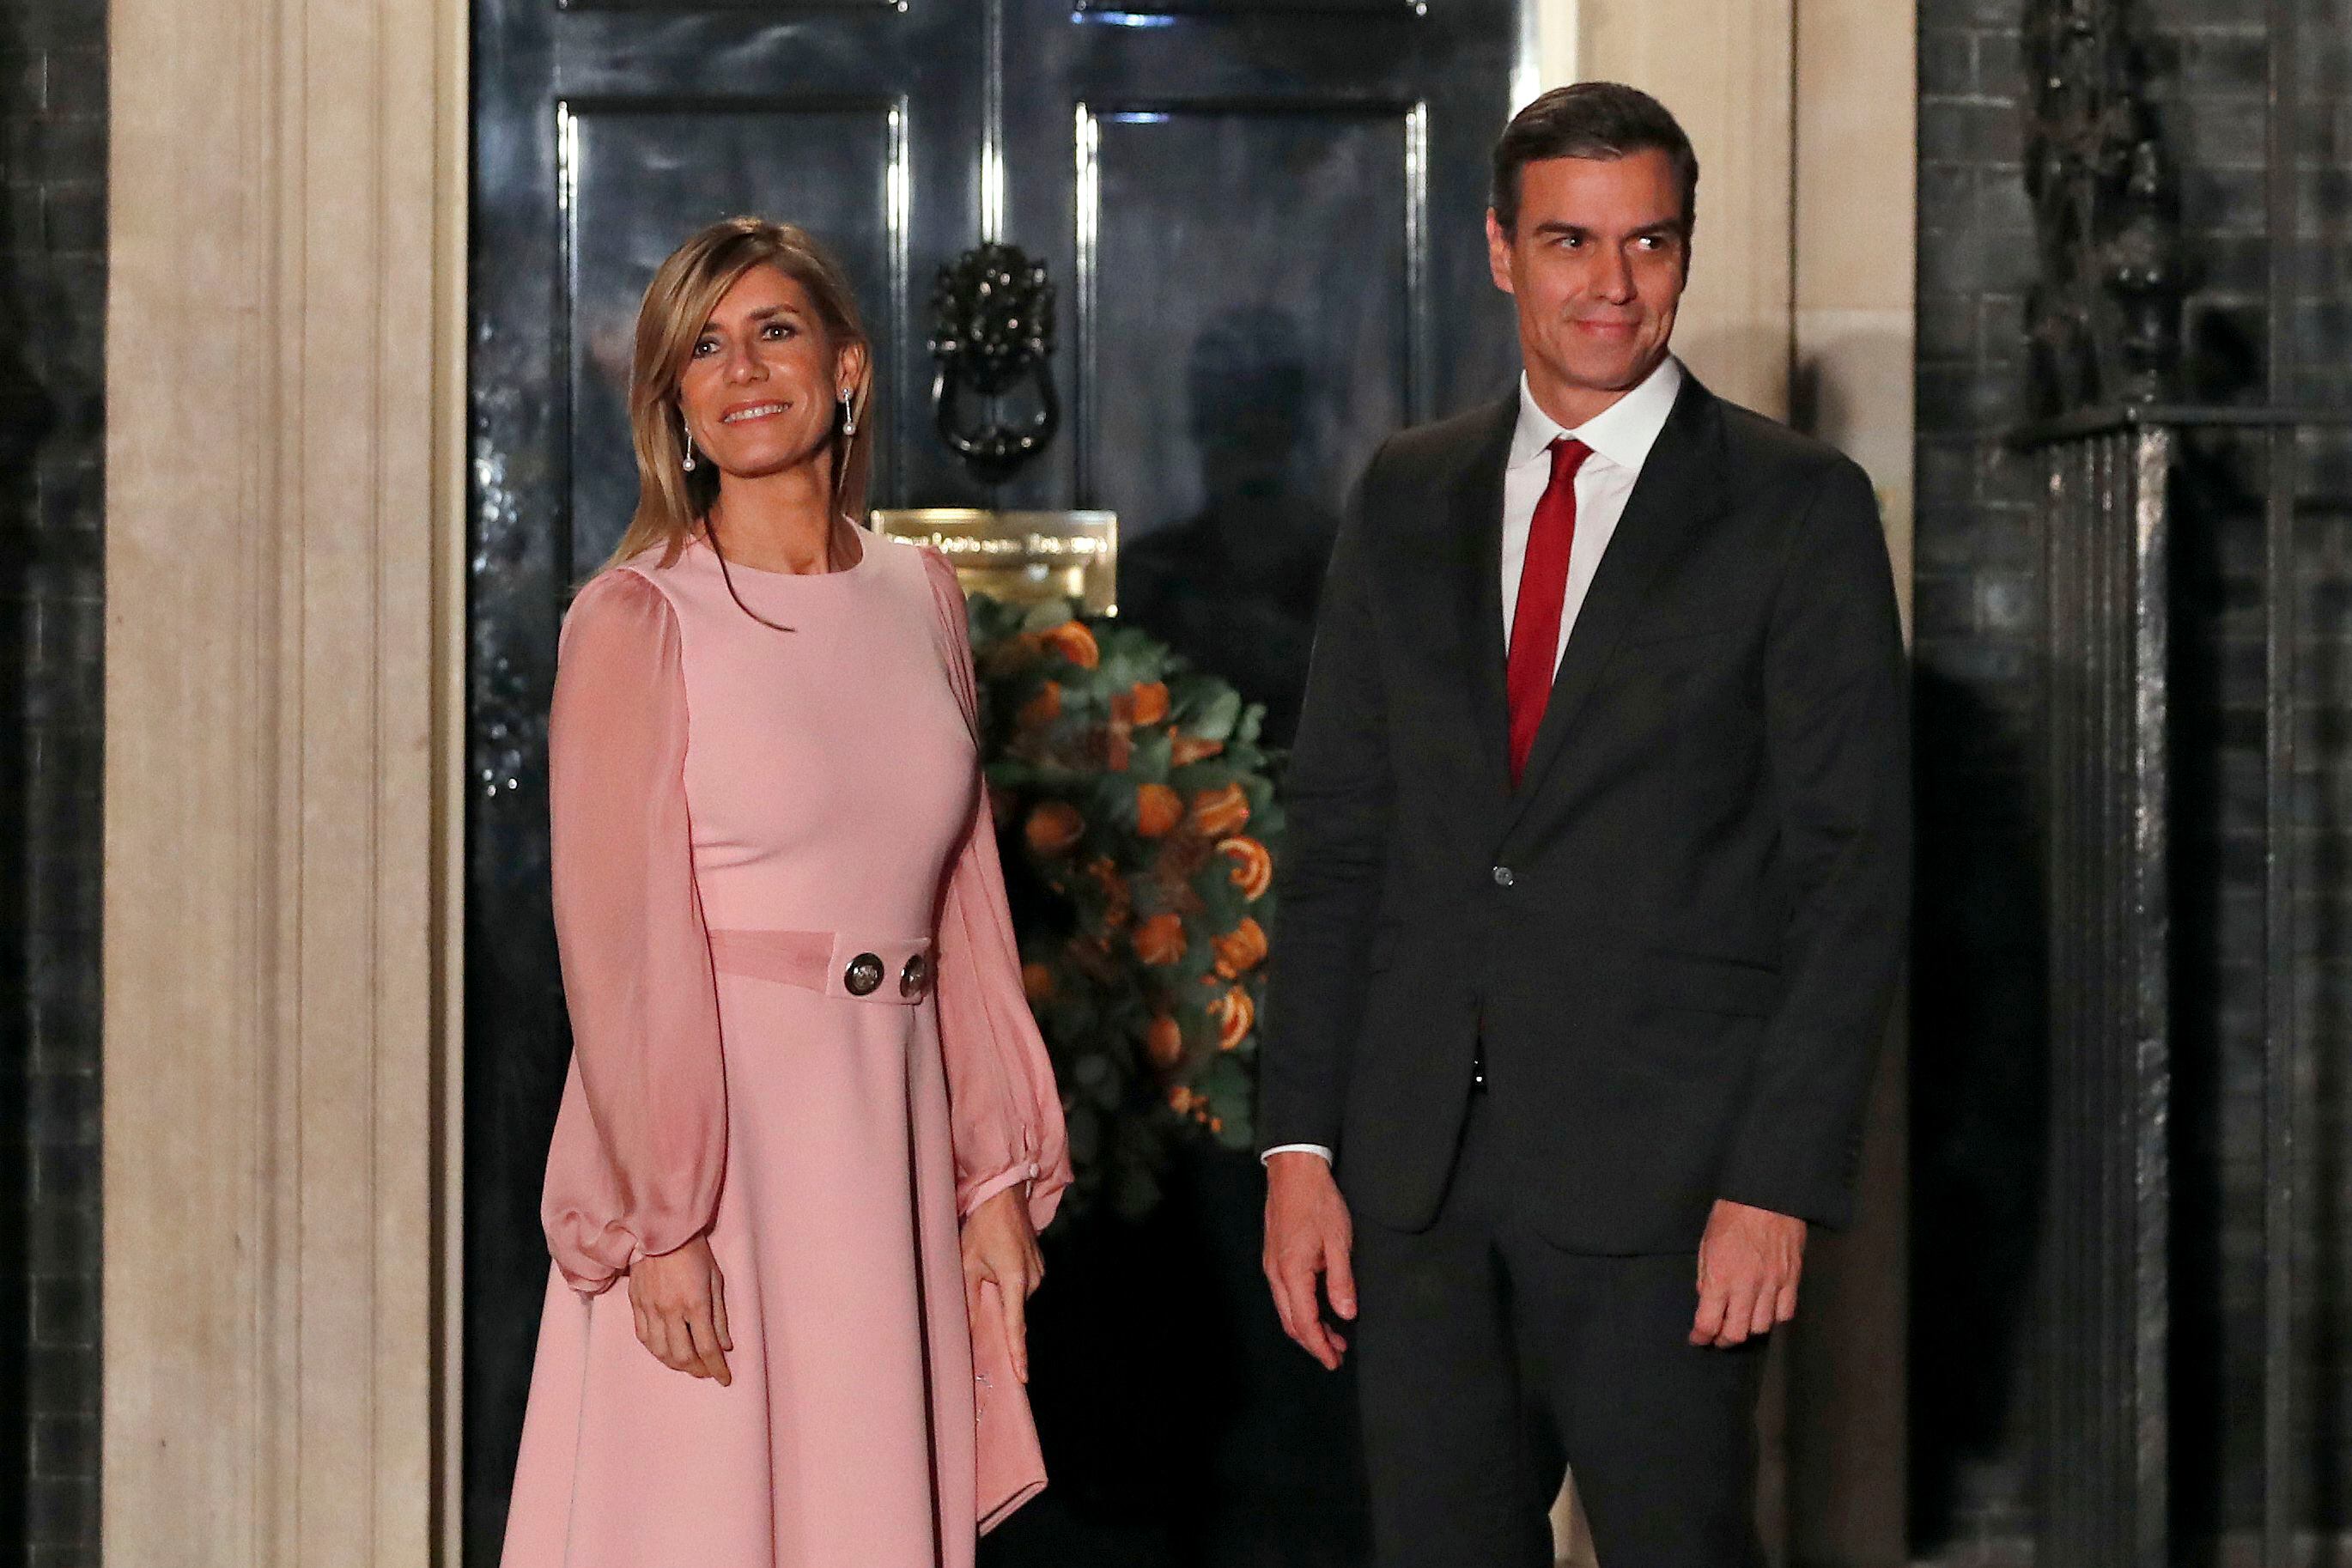 gustavo petro se solidarizó con el presidente del gobierno español, pedro sánchez, por escándalo que salpica a su esposa. ¿qué dijo?